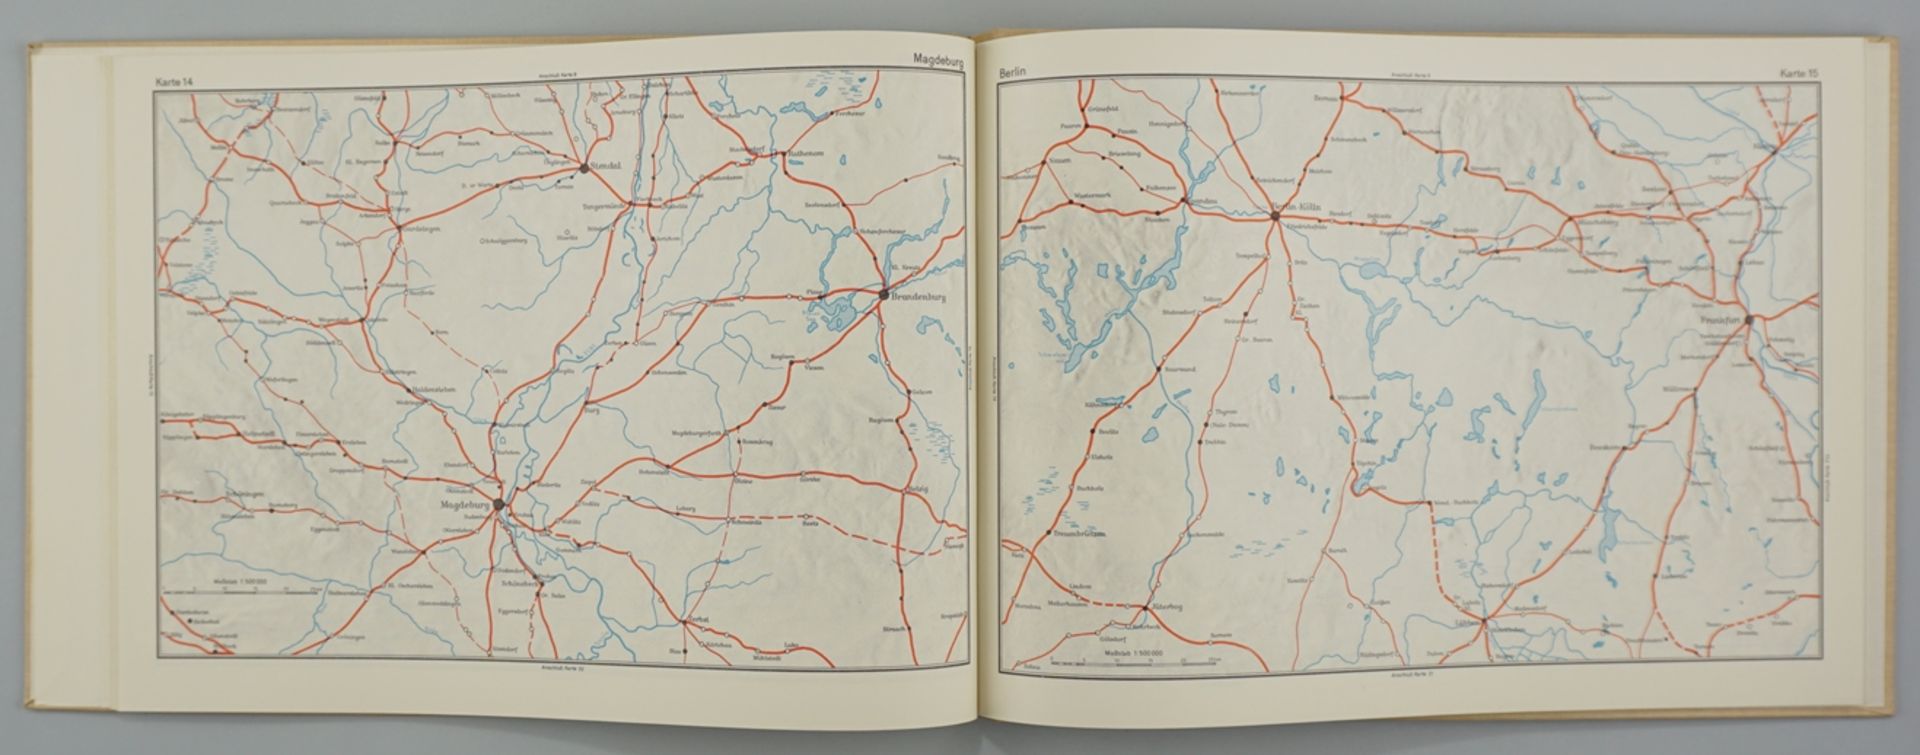 Friedrich Bruns / Hugo Weczerka: Hansische Handelsstrassen, Atlas, 1962 - Image 2 of 2